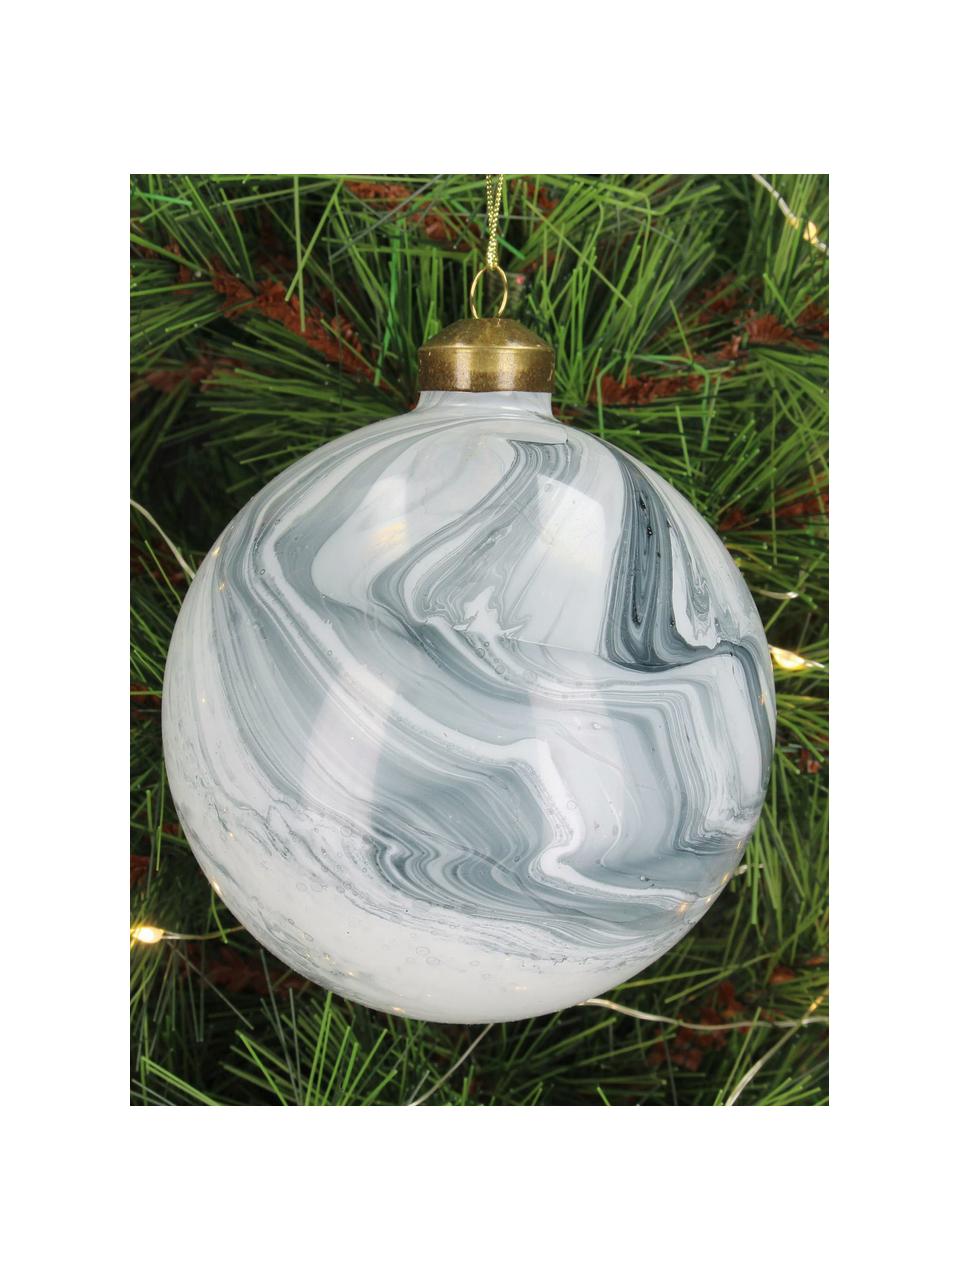 Weihnachtskugeln Marble in Marmoroptik, 6 Stück, Glas, Graublau, Weiß, hell, Ø 10 cm